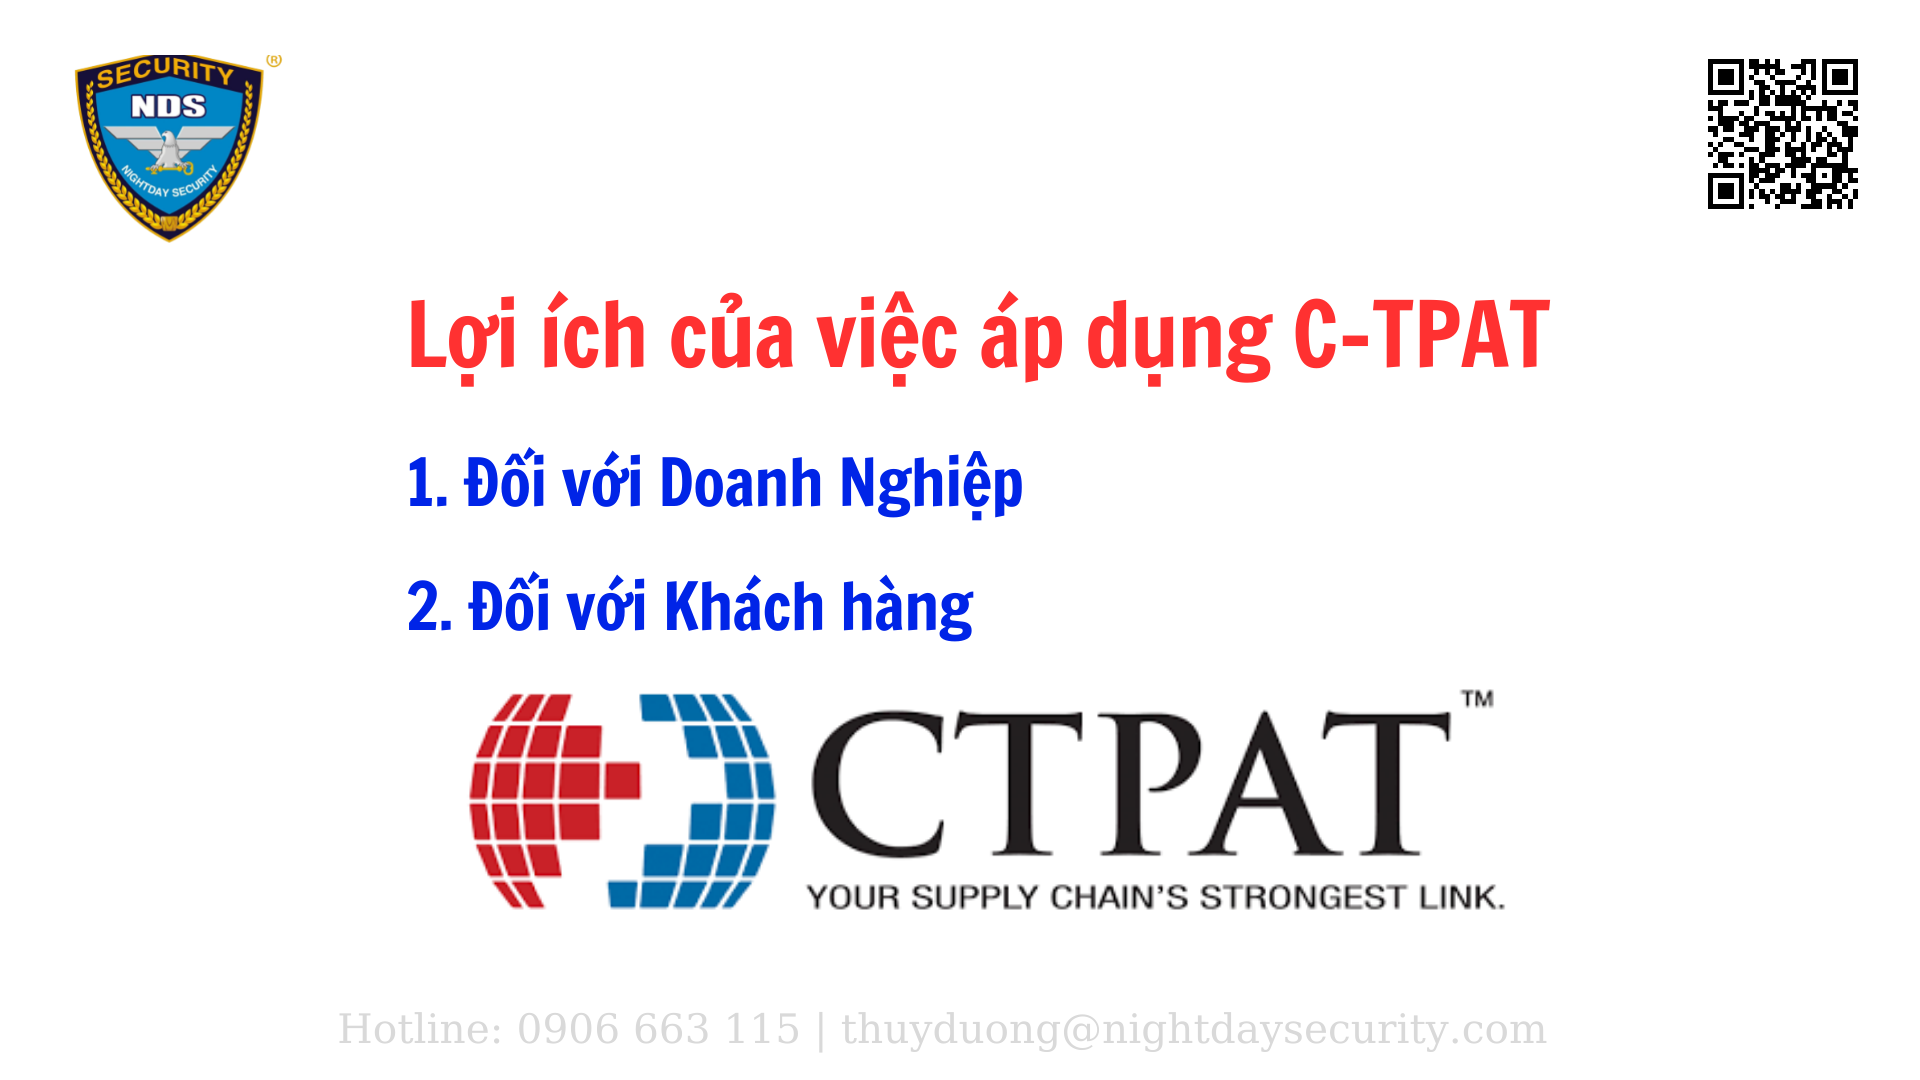 Lợi ích của việc áp dụng C-TPAT